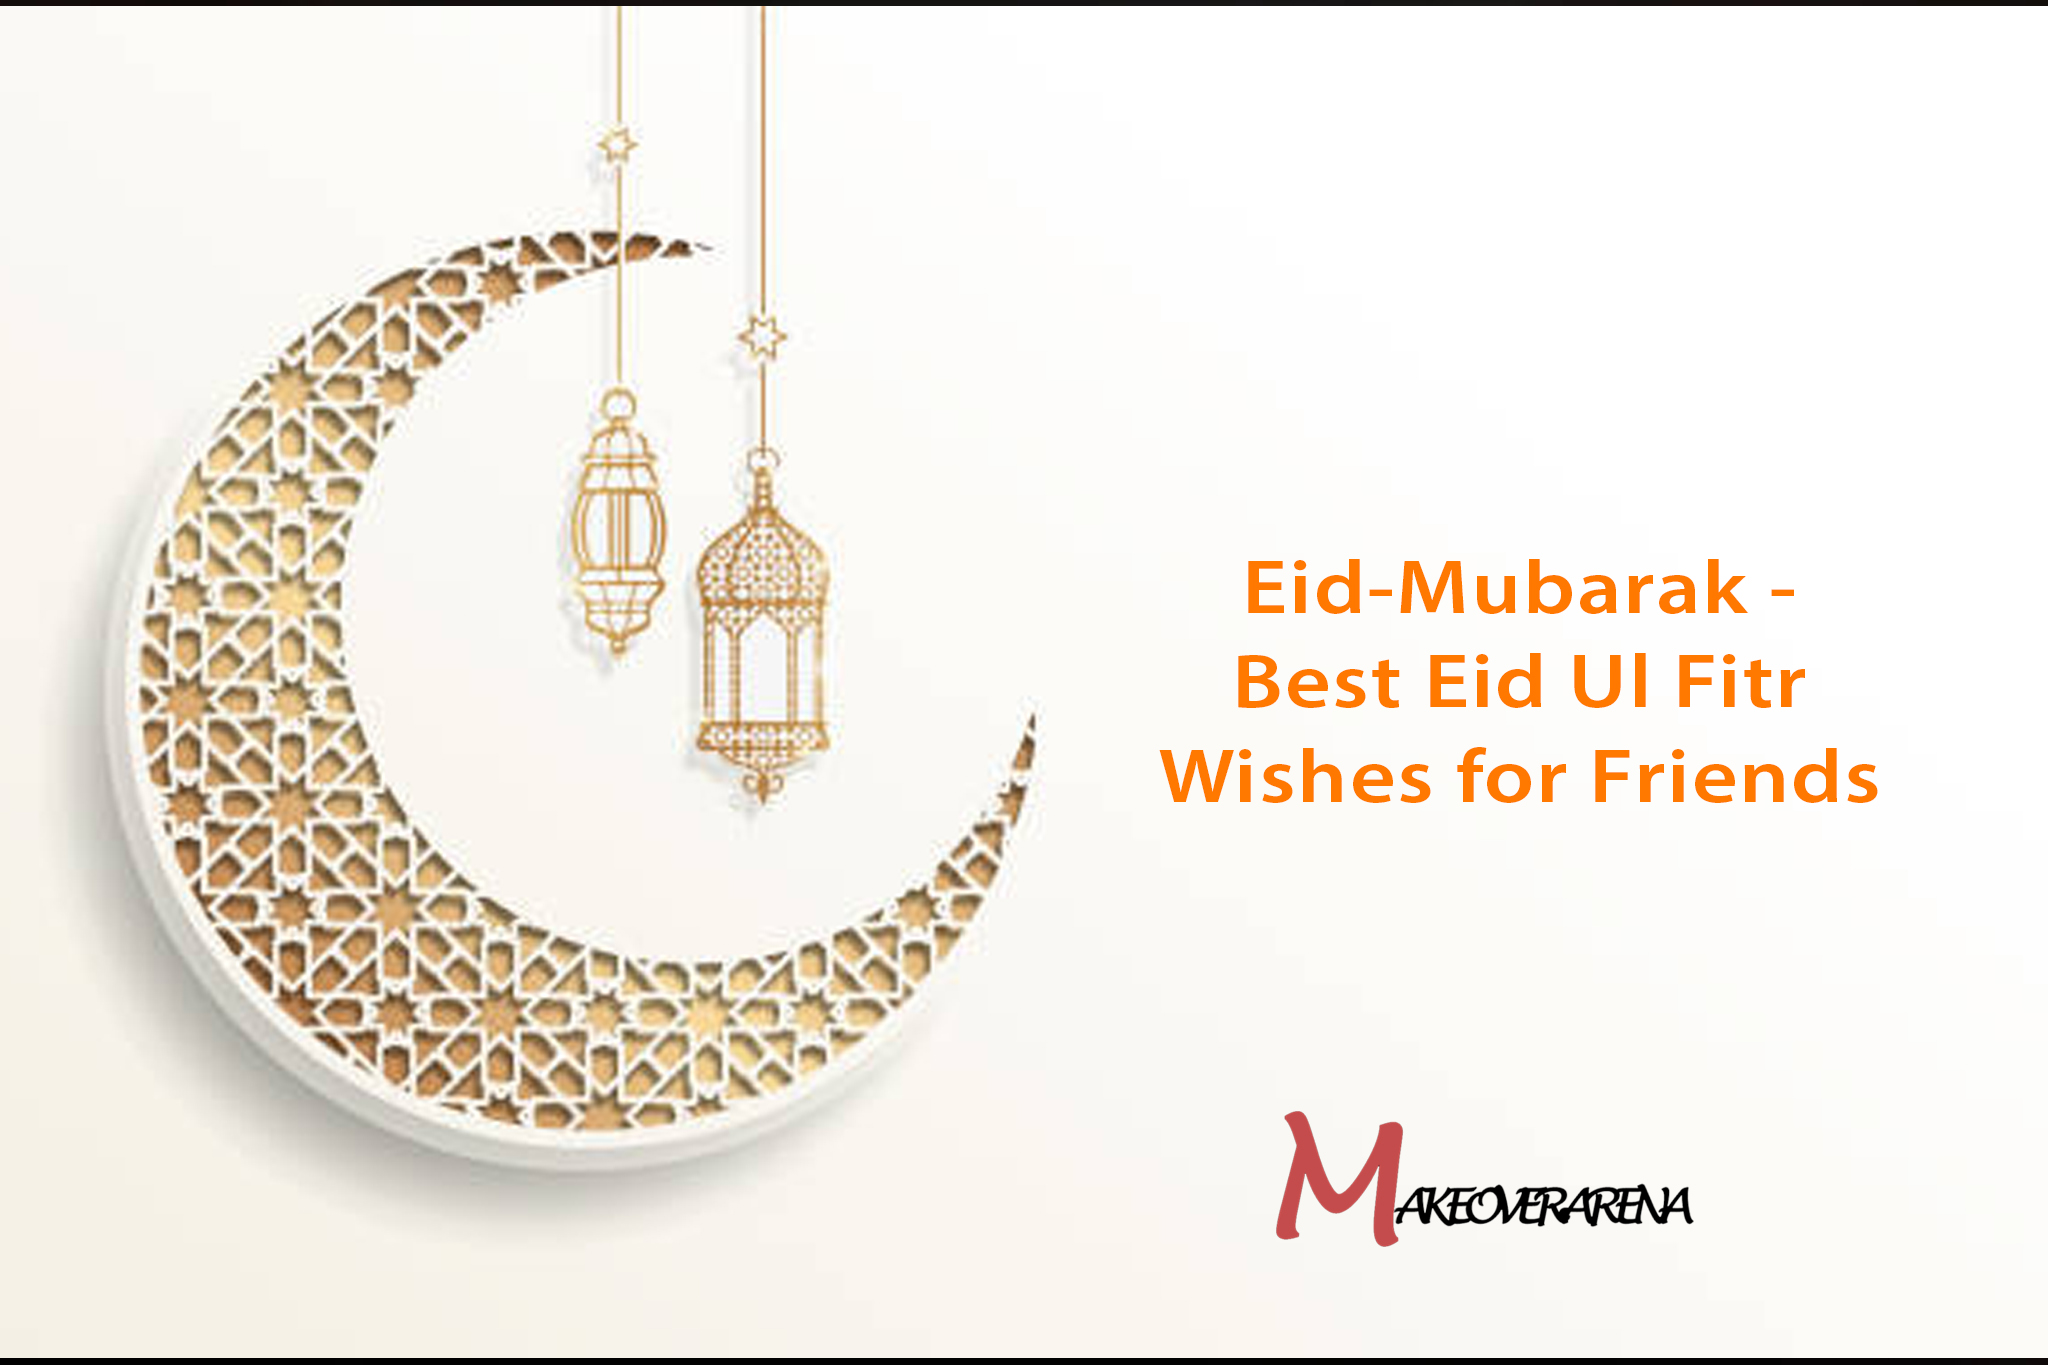 Eid-Mubarak - Best Eid Ul Fitr Wishes for Friends